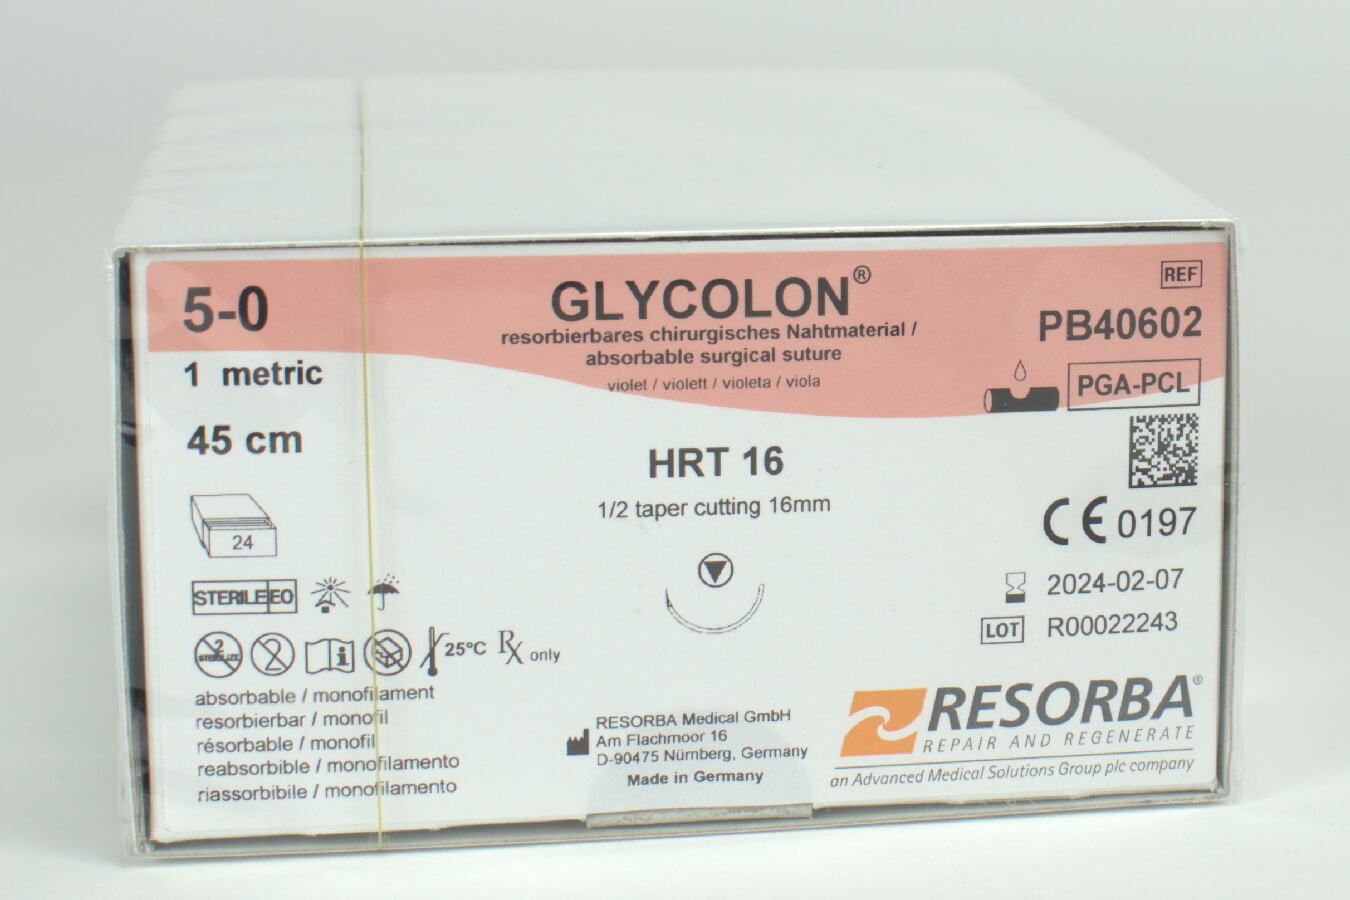 Glycolon violett 5/0 HRT16, 24 Stück